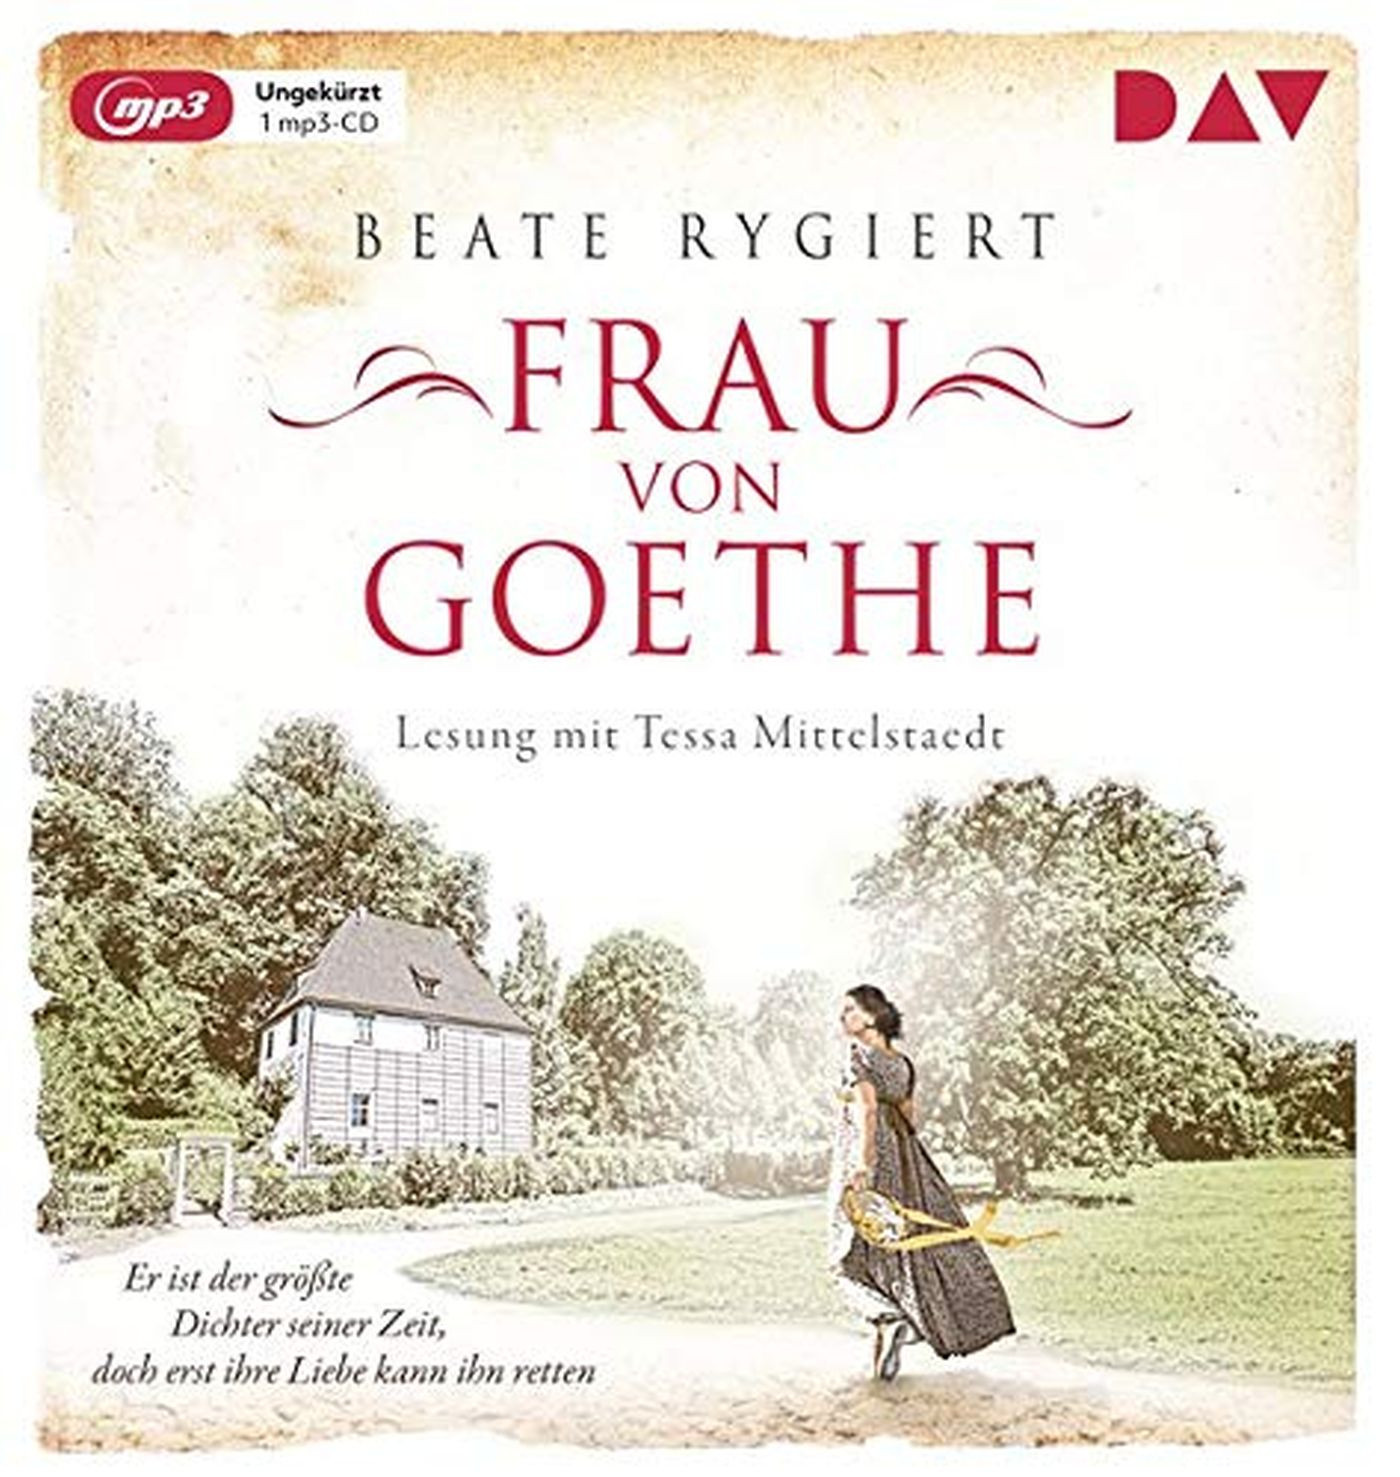 Beate Rygiert  - Frau von Goethe. Er ist der größte Dichter seiner Zeit, doch erst ihre Liebe kann ihn retten